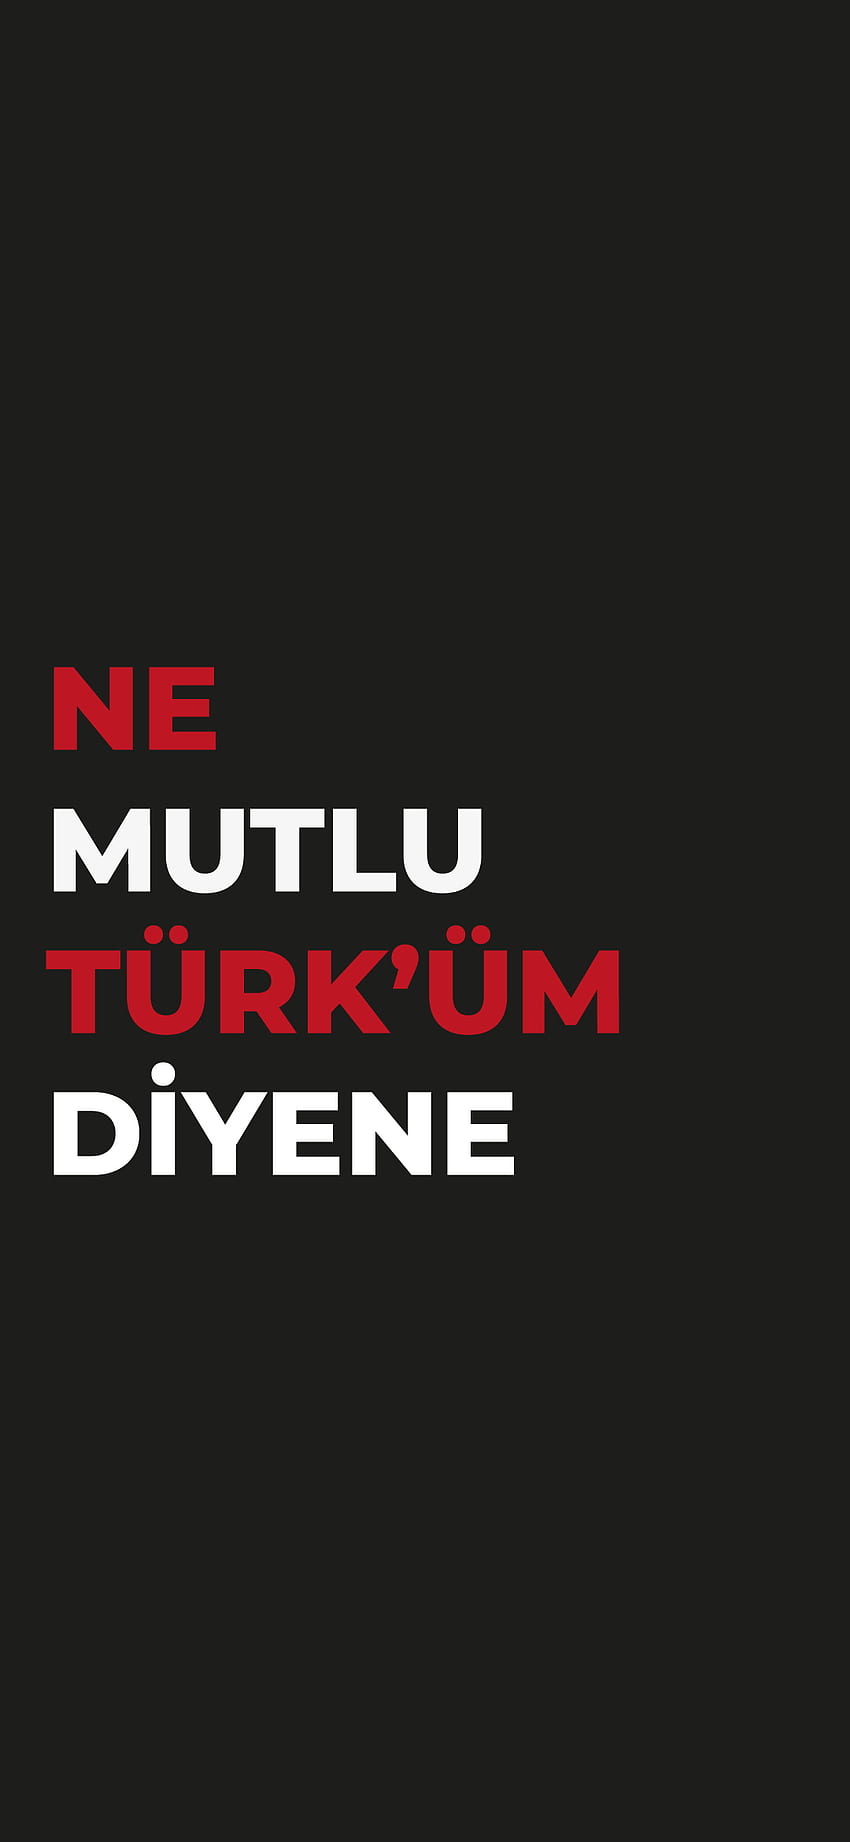 NE MUTLU TURKUM, Atatürk, Hcdnmezdesign, Bayrak, Diyene, Türke, Bozkurt HD-Handy-Hintergrundbild